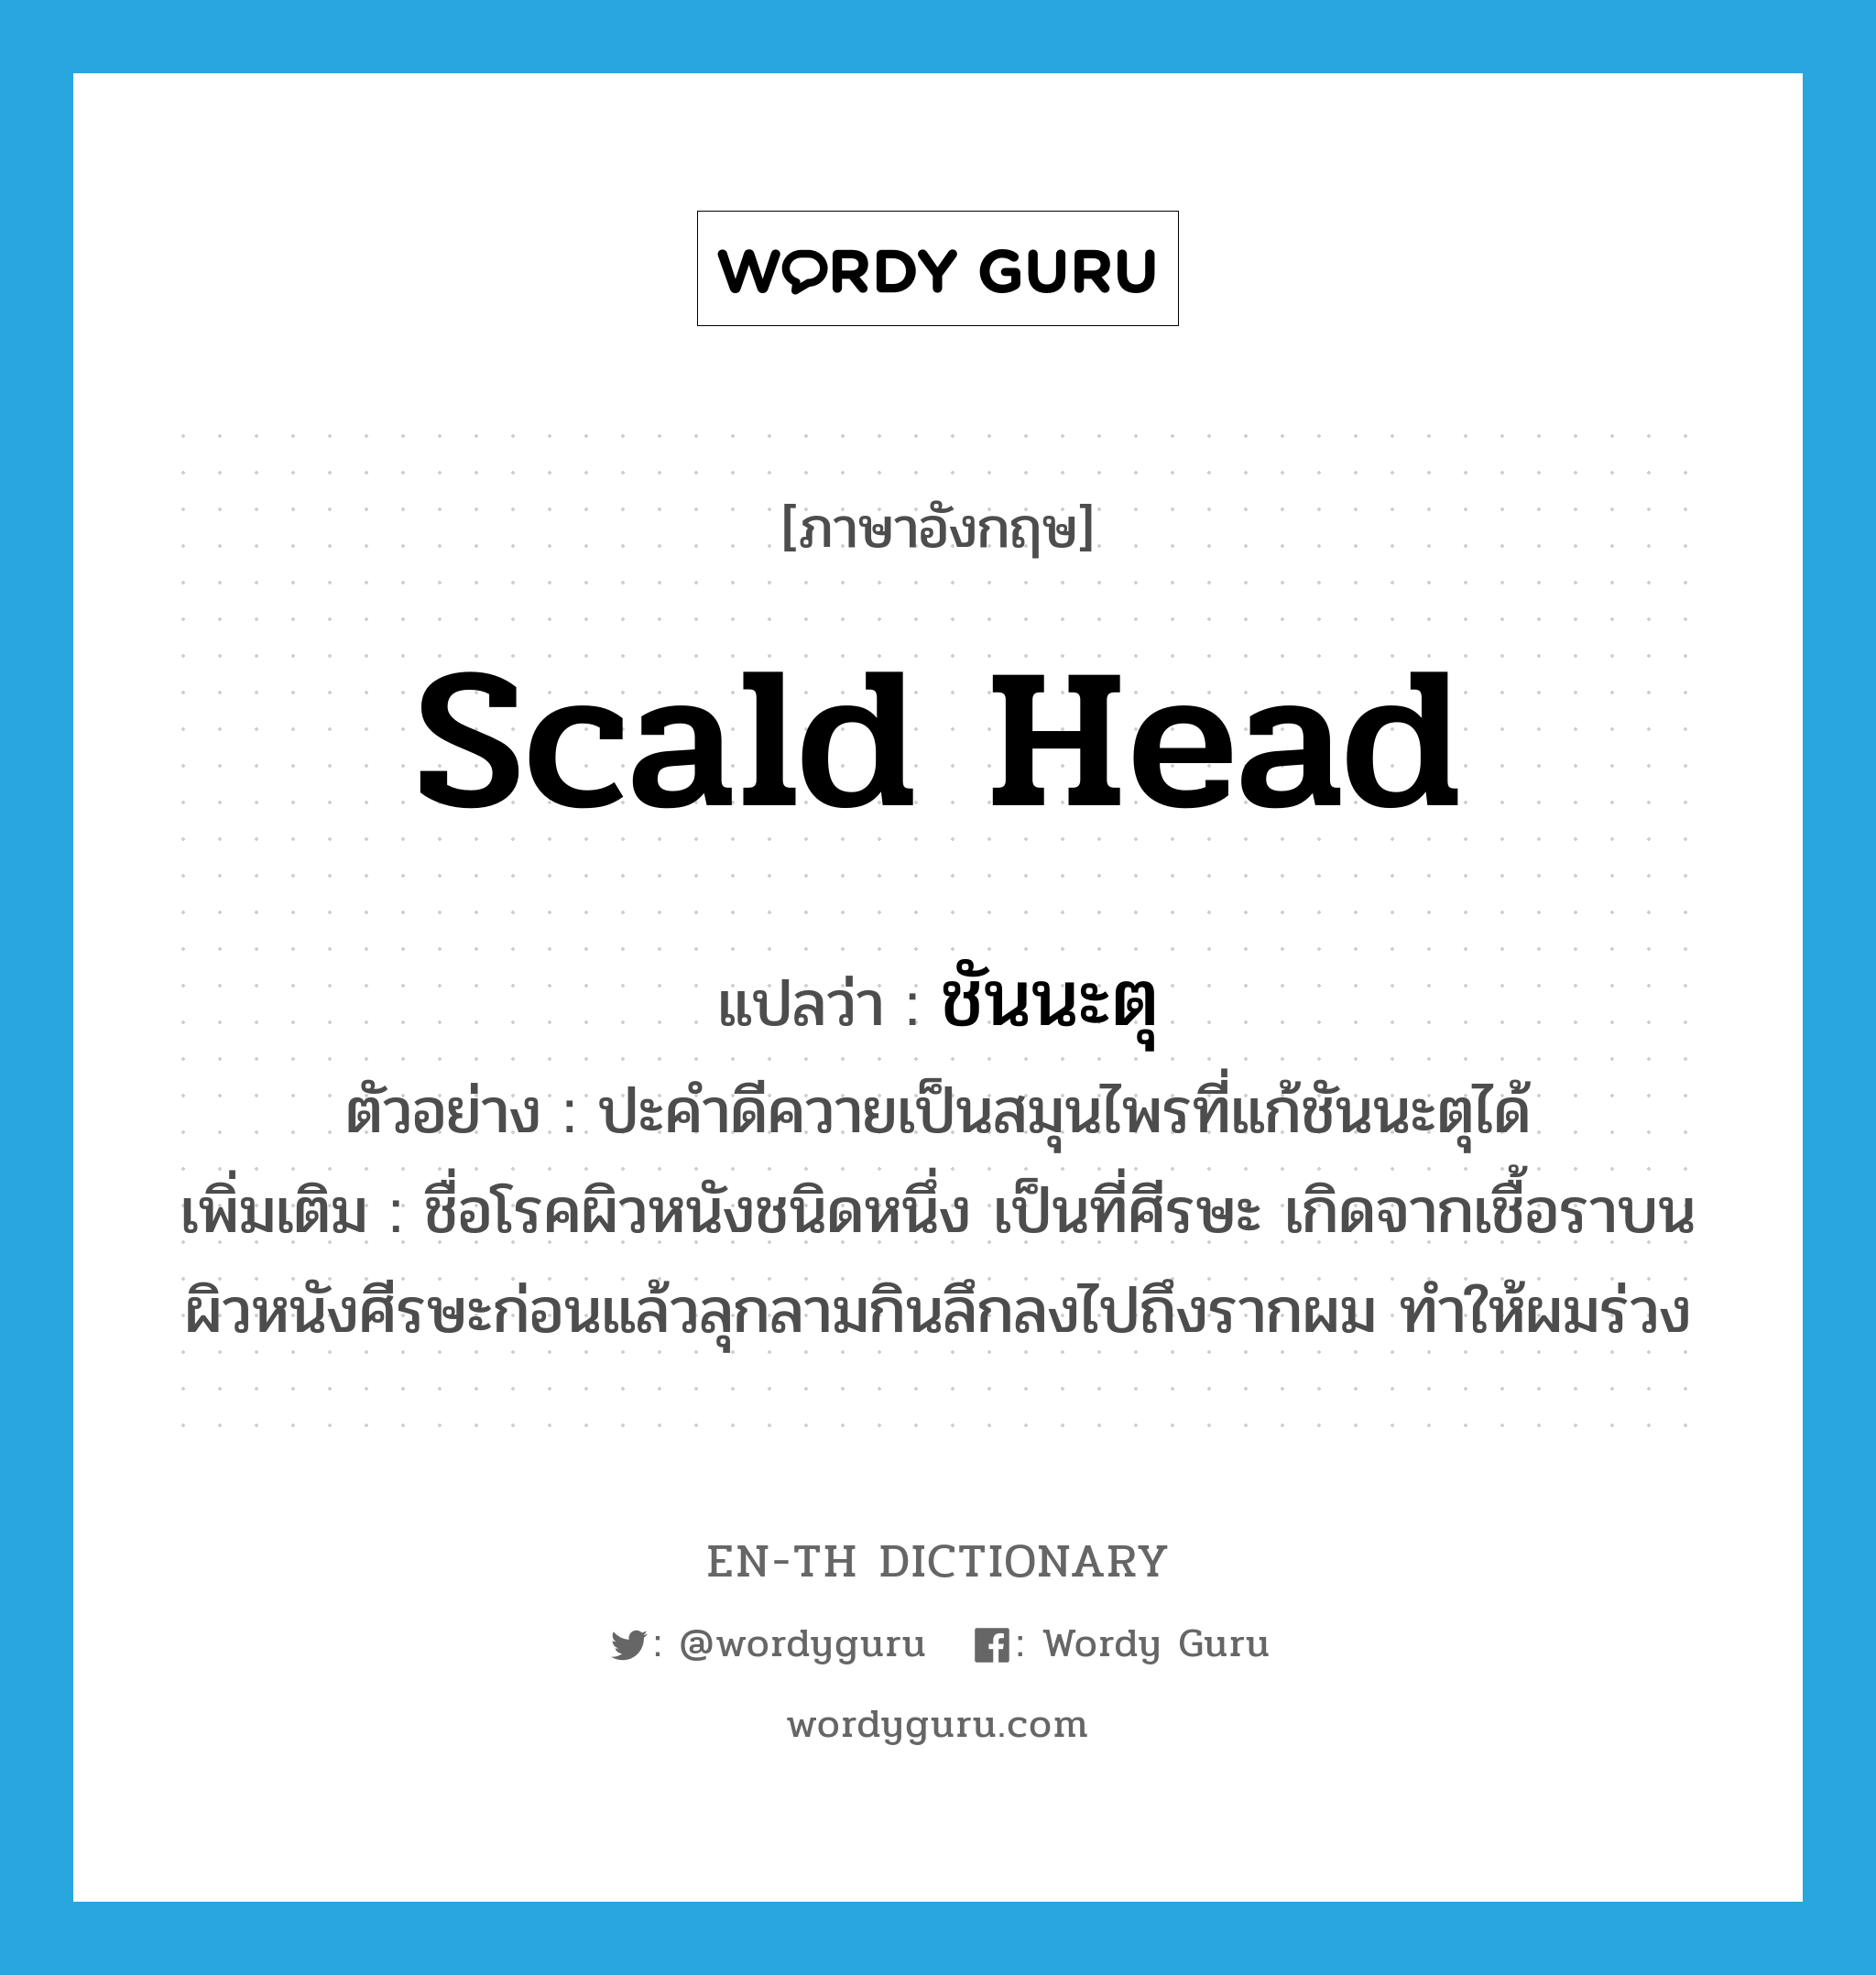 scald head แปลว่า?, คำศัพท์ภาษาอังกฤษ scald head แปลว่า ชันนะตุ ประเภท N ตัวอย่าง ปะคำดีควายเป็นสมุนไพรที่แก้ชันนะตุได้ เพิ่มเติม ชื่อโรคผิวหนังชนิดหนึ่ง เป็นที่ศีรษะ เกิดจากเชื้อราบนผิวหนังศีรษะก่อนแล้วลุกลามกินลึกลงไปถึงรากผม ทำให้ผมร่วง หมวด N